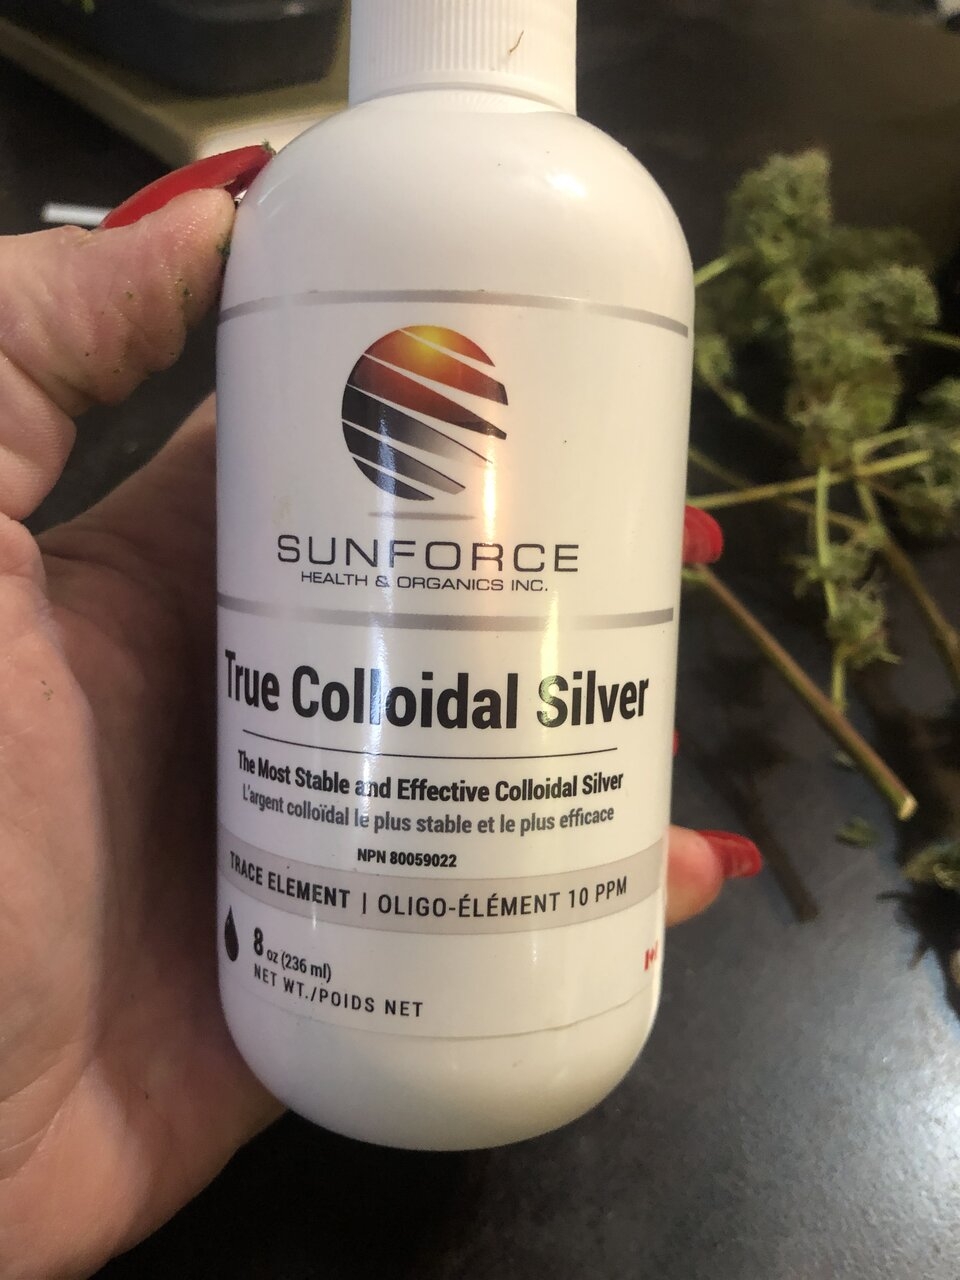 True Colloidal Silver